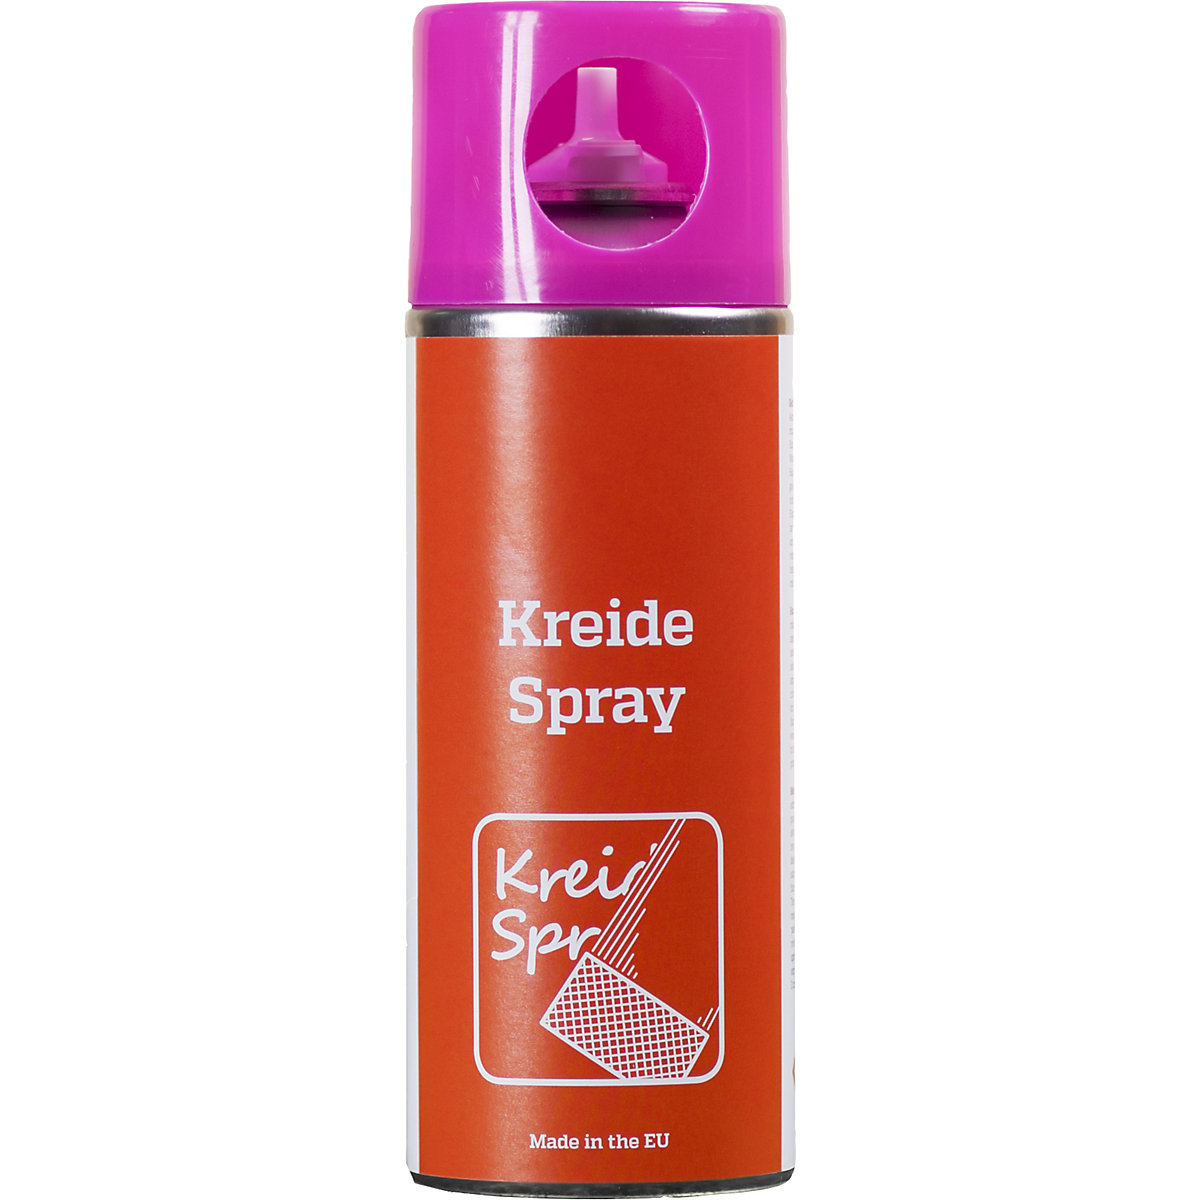 Kreidespray, Inhalt 400 ml, VE 6 Stk, pink, ab 5 VE-1